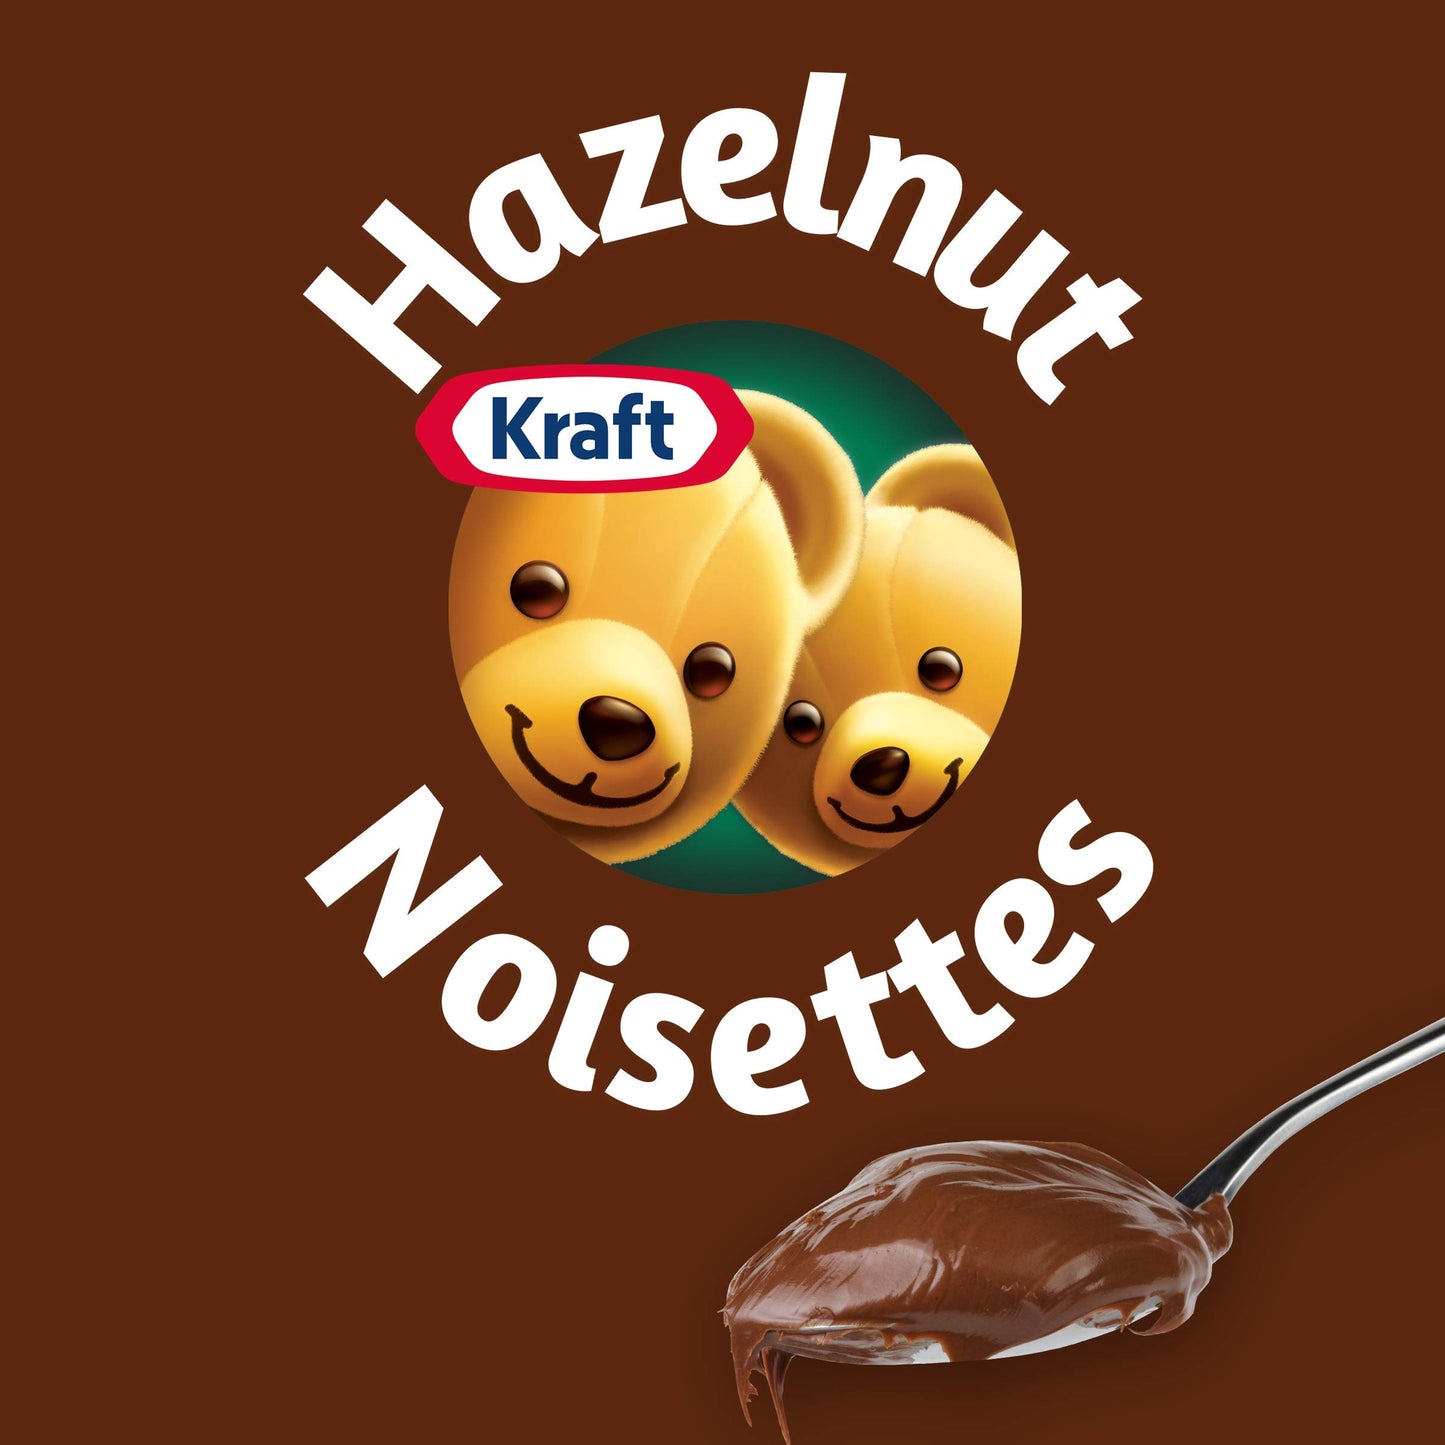 Kraft Hazelnut Chocolate Spread (No Palm Oil) 725g/25.6oz (Shipped from Canada)